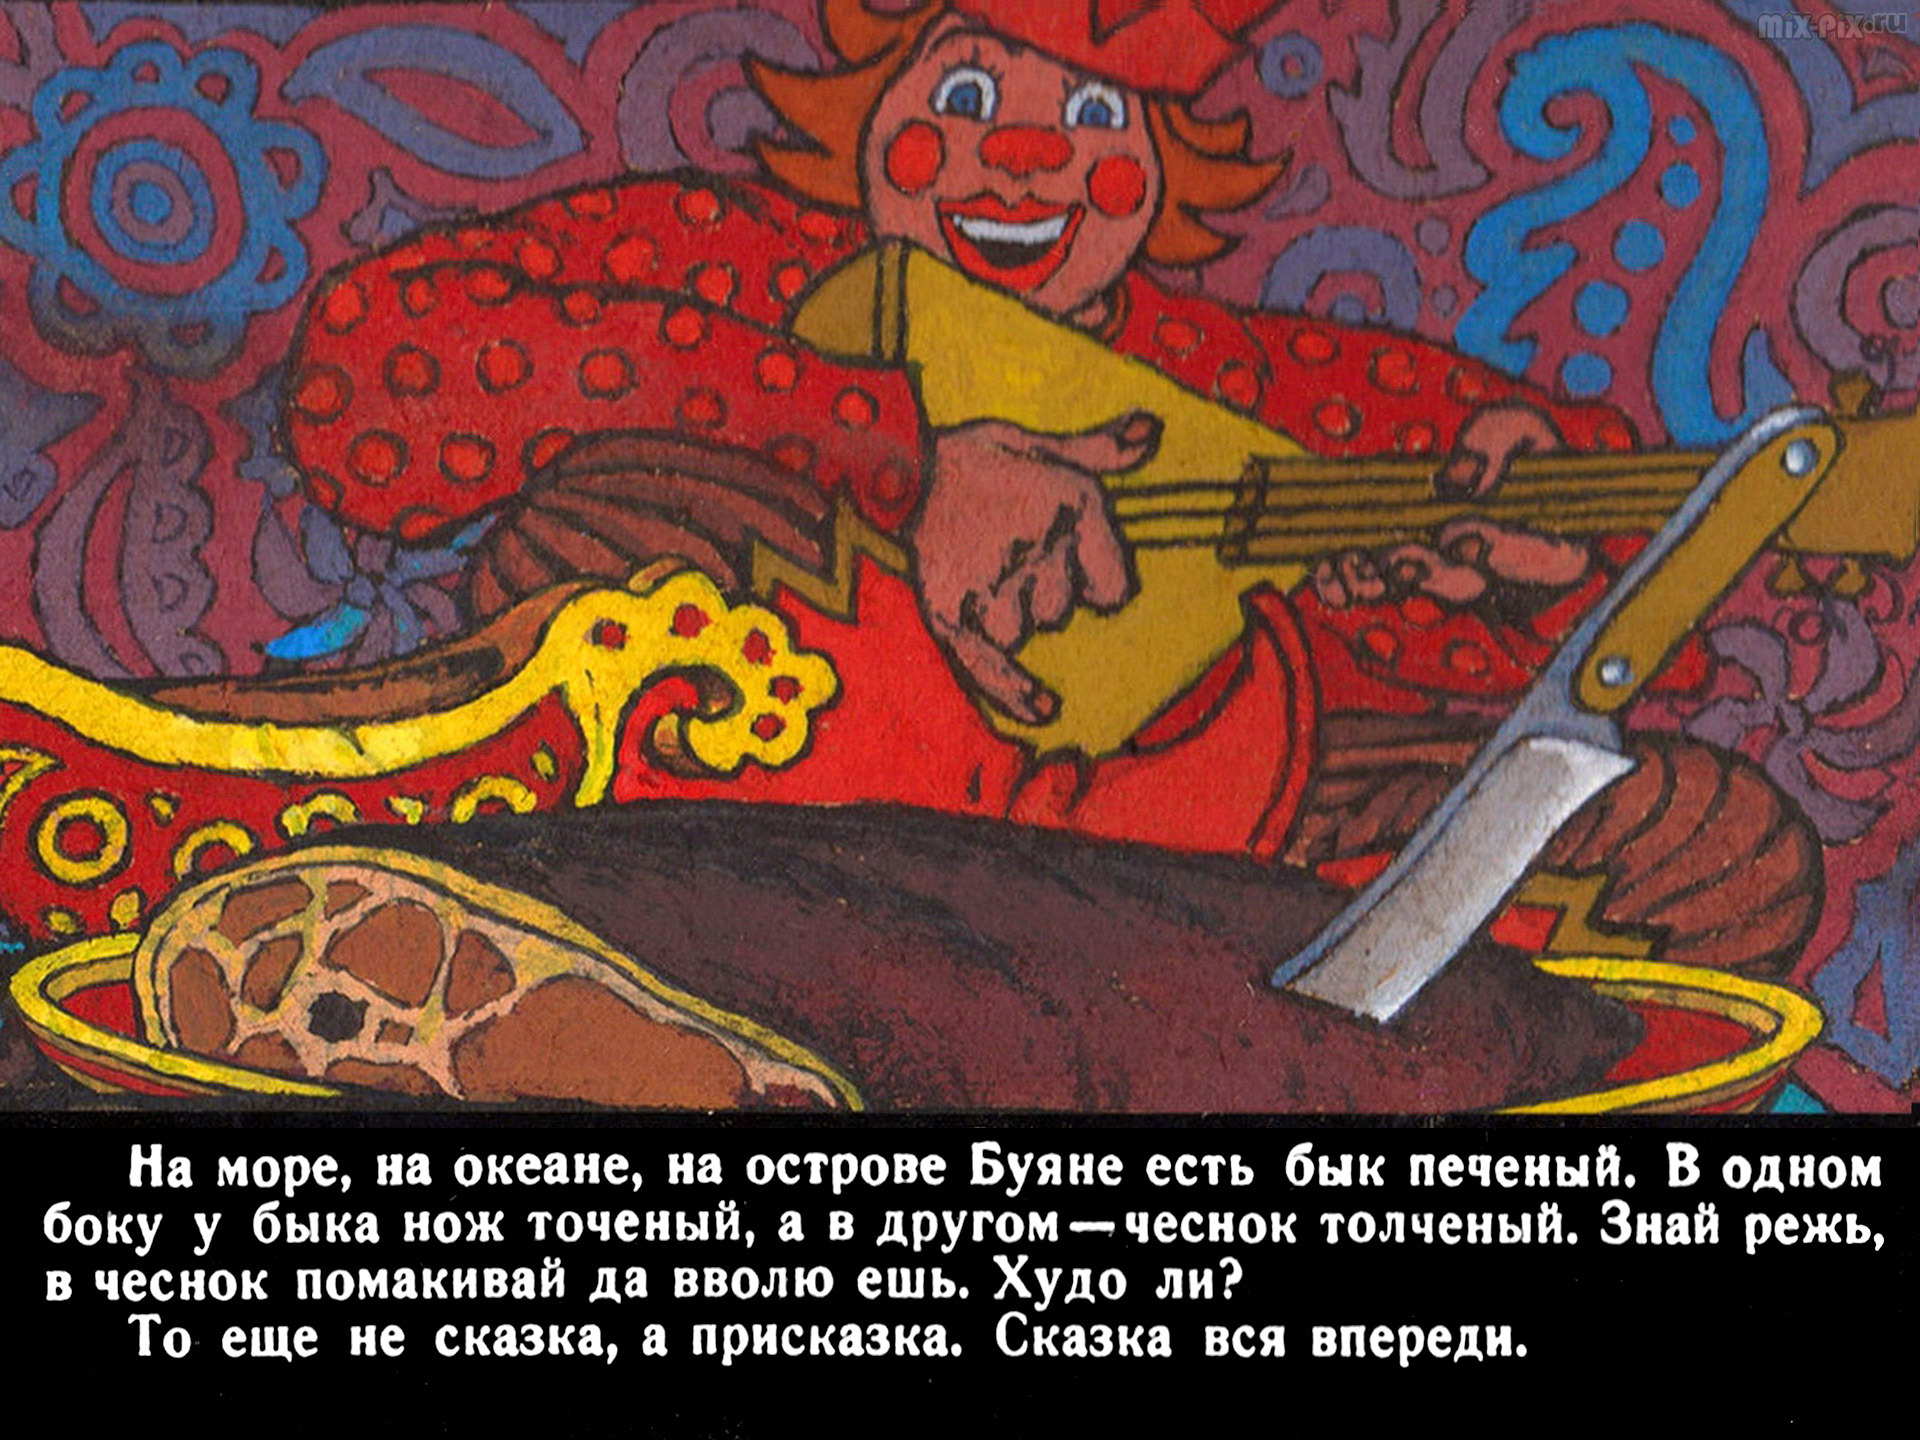 Читать сказку вдовий сын - туркменская сказка, онлайн бесплатно с иллюстрациями.